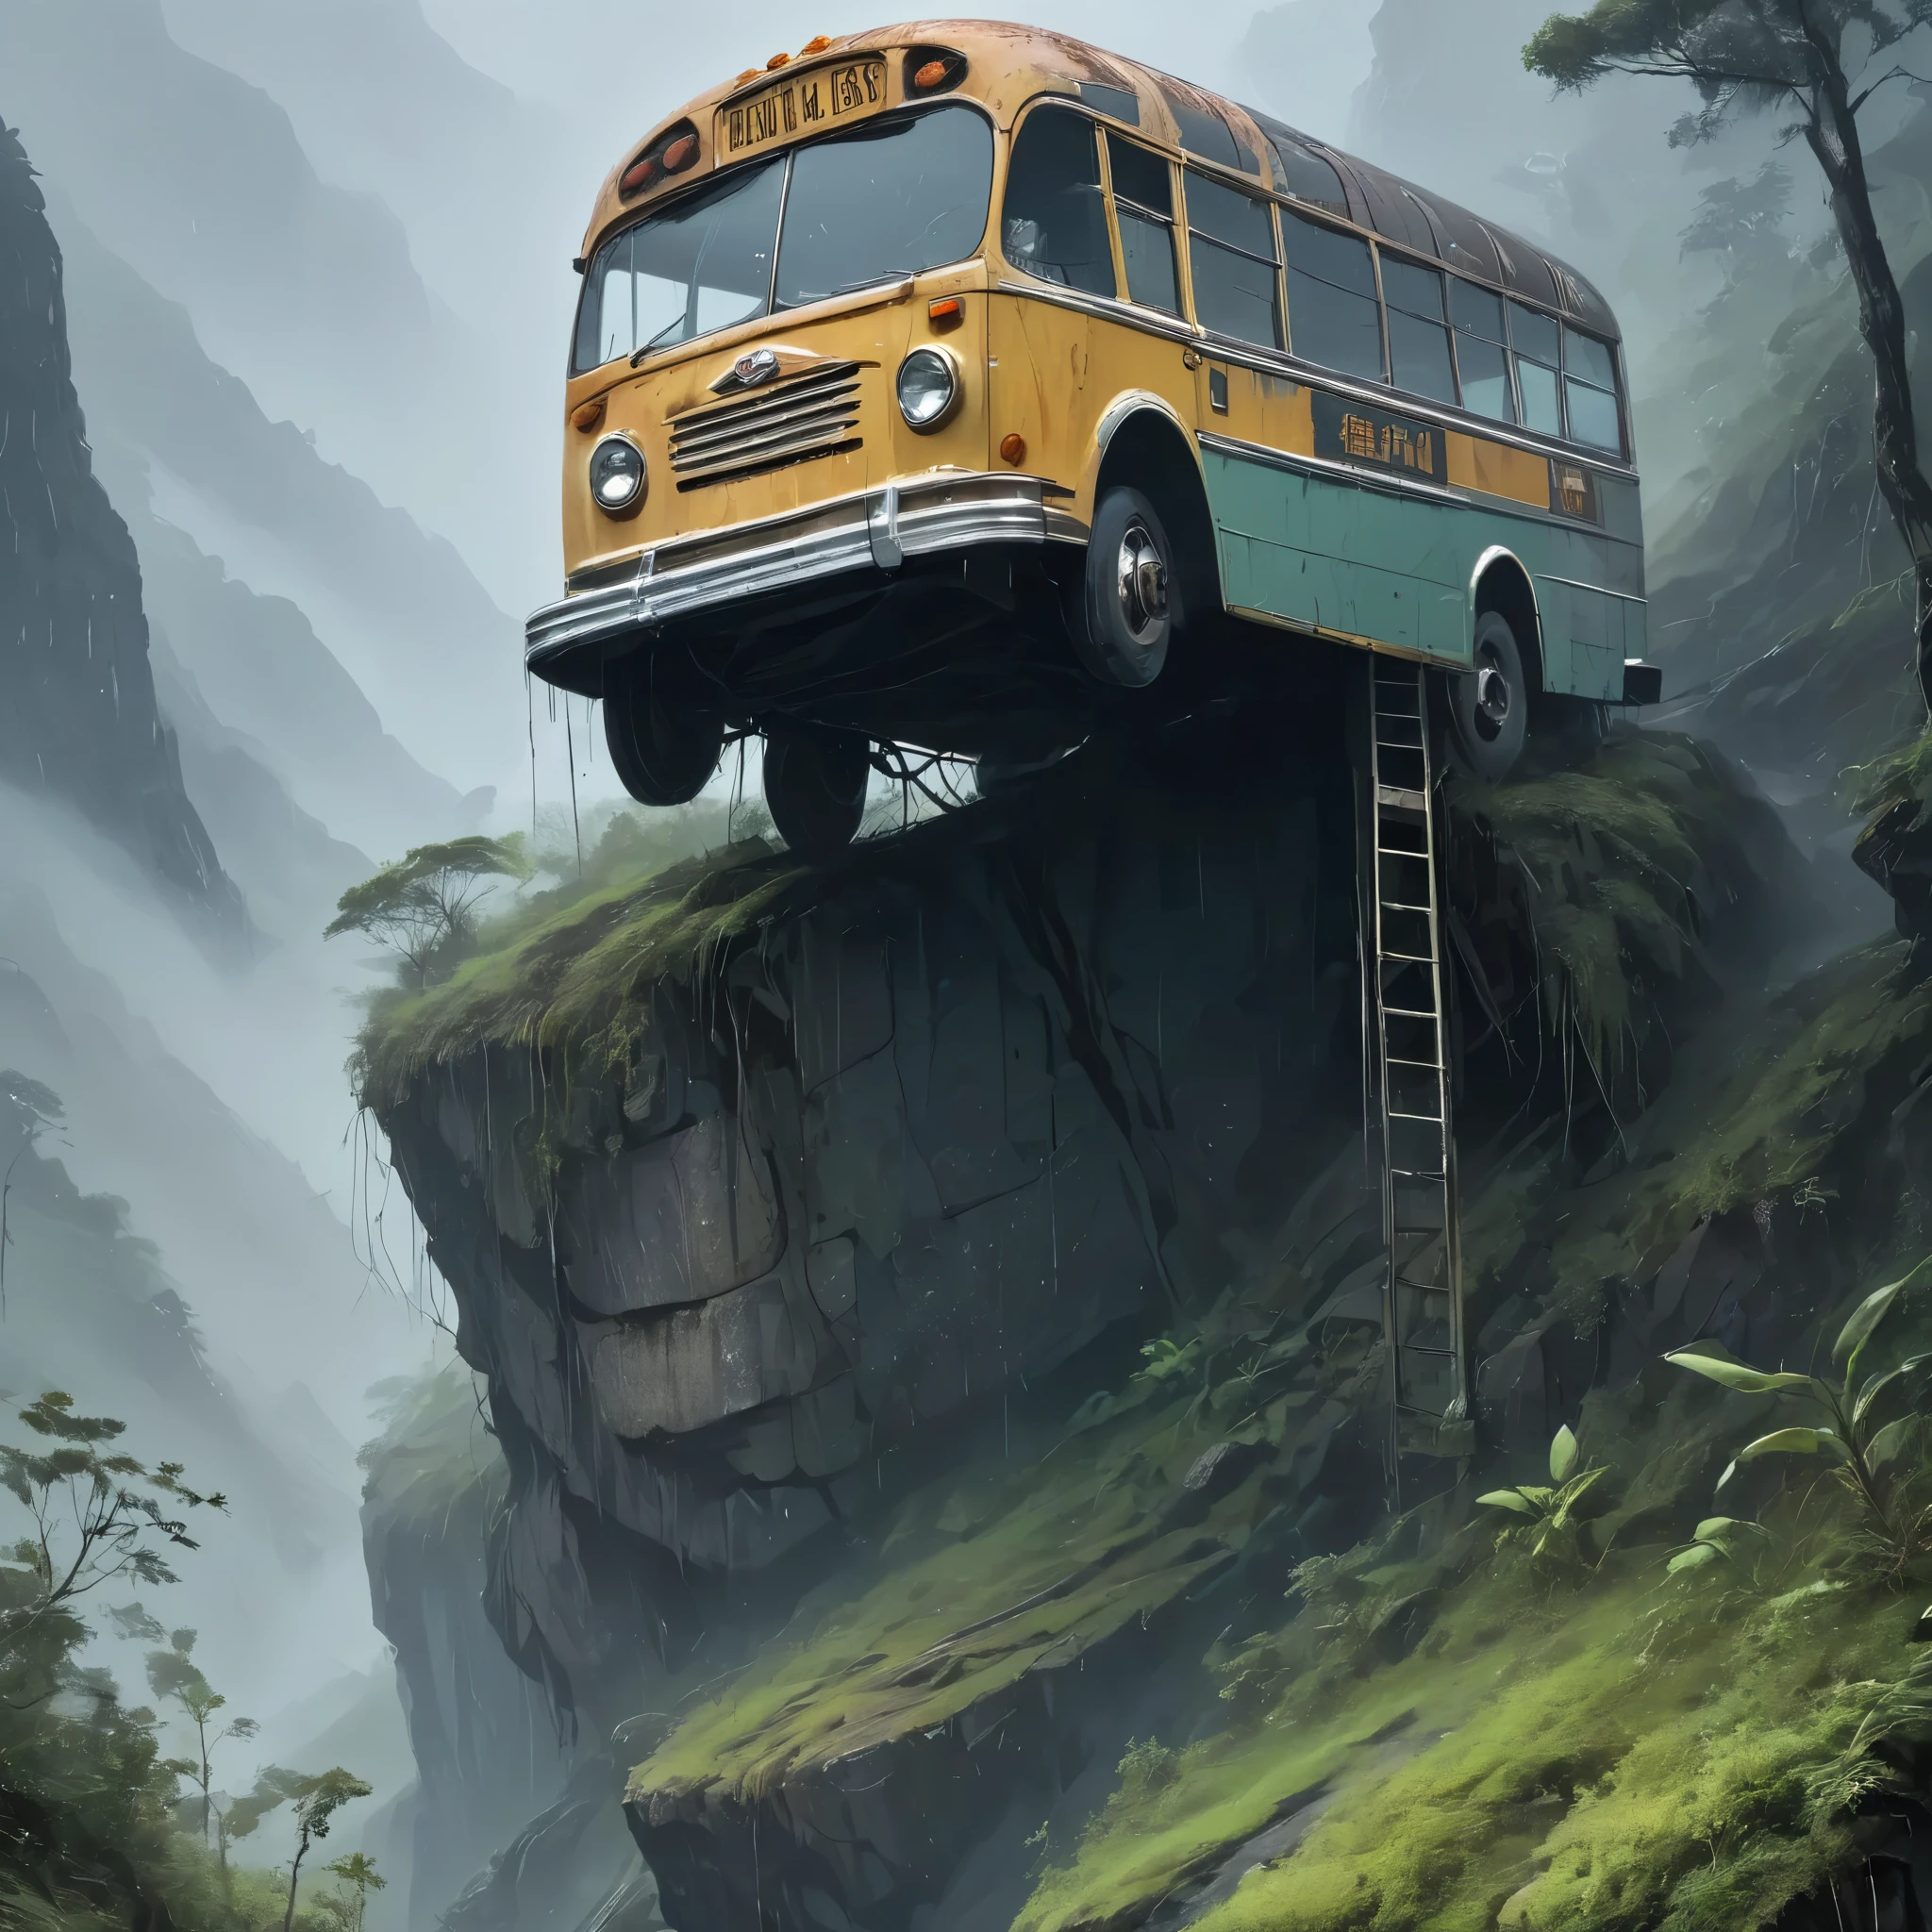 Inmitten eines sintflutartigen Regengusses und eingehüllt in dichten Nebel fängt das Bild einen verwitterten und heruntergekommenen Bus ein, der gefährlich auf einem schroffen Berg thront und als unwahrscheinliche Brücke dient, die zwei getrennte Welten verbindet.